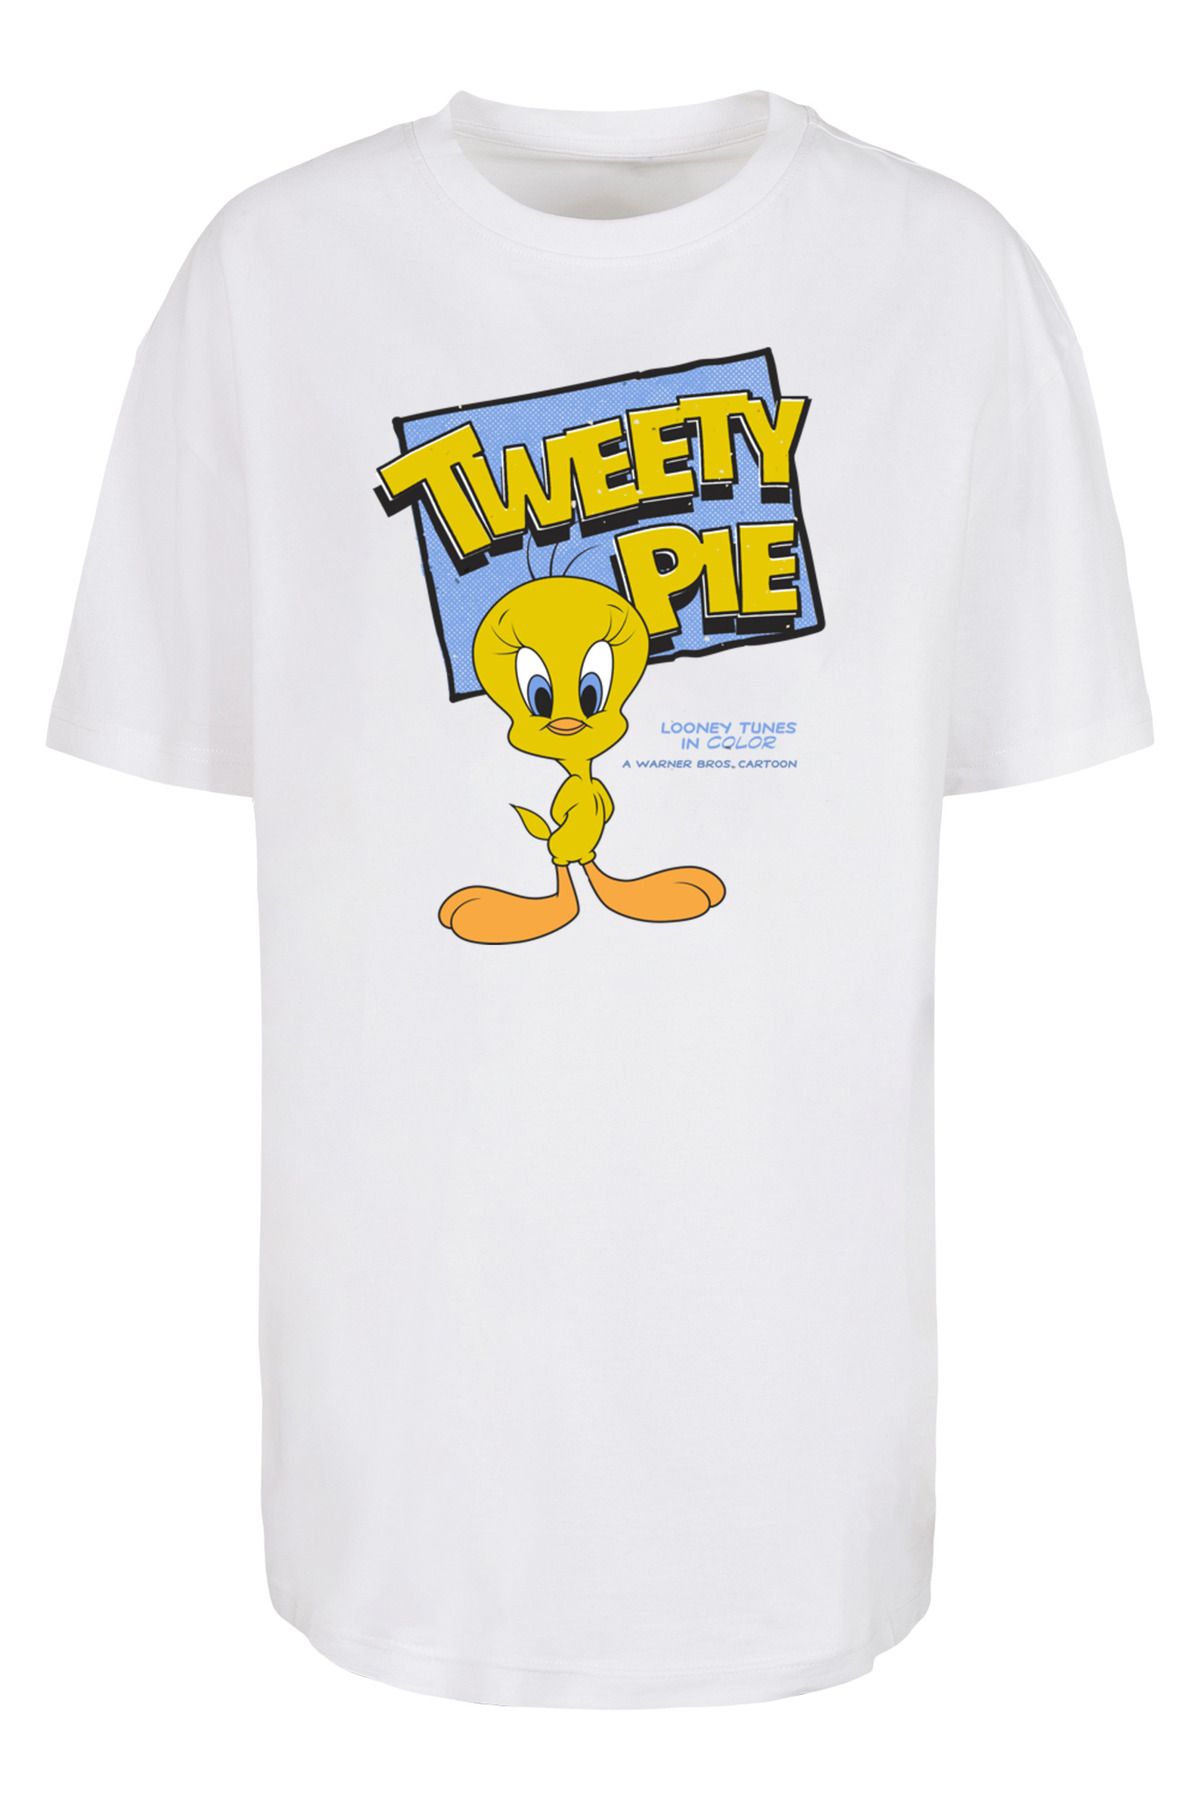 Trendyol Boyfriend-T-Shirt - F4NT4STIC Classic -WHT für Tweety Damen übergroßem Damen mit Pie